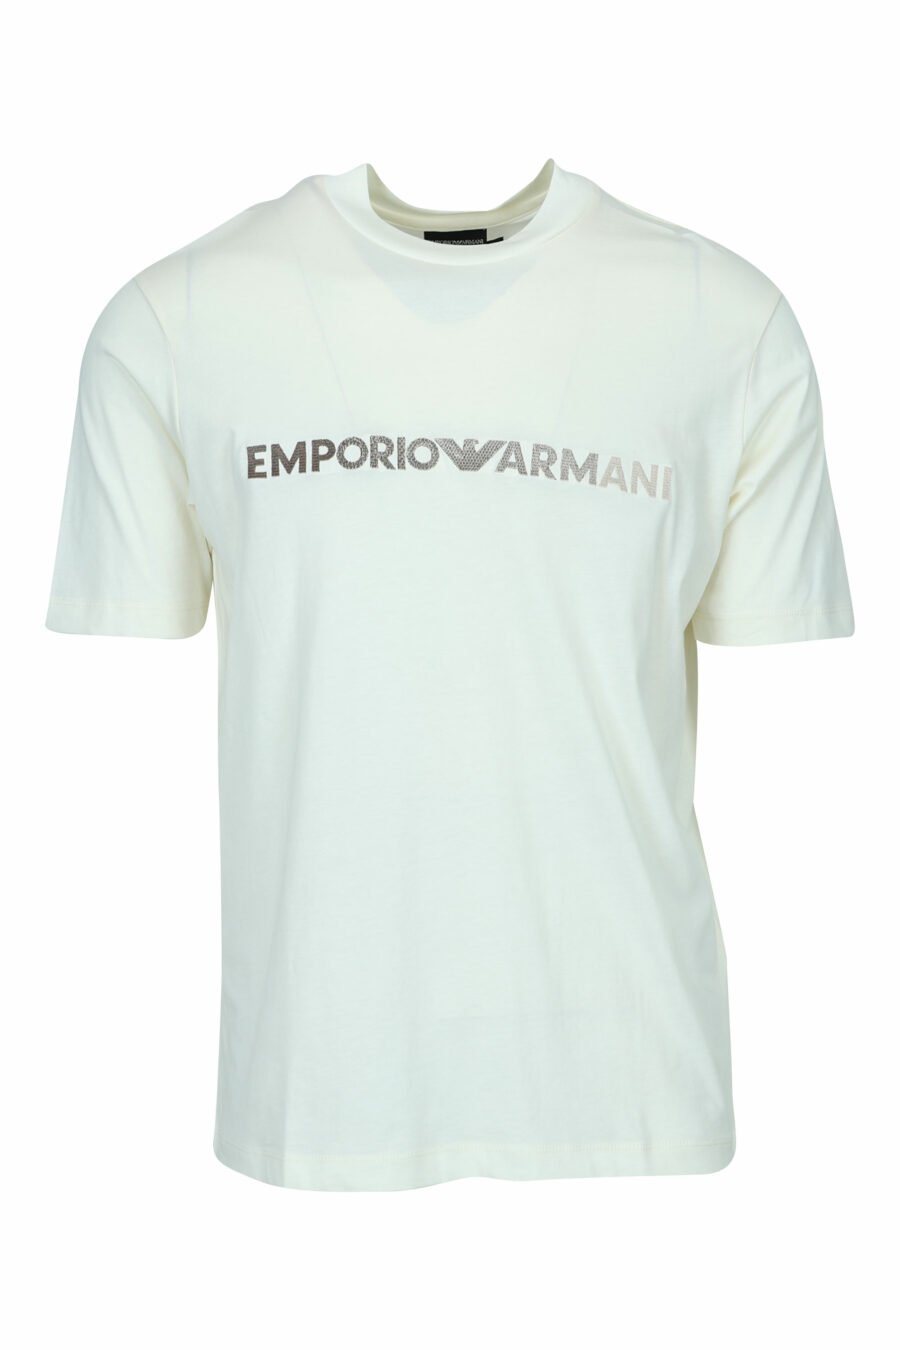 T-shirt crème avec maxilogo "emporio" - 8058947988037